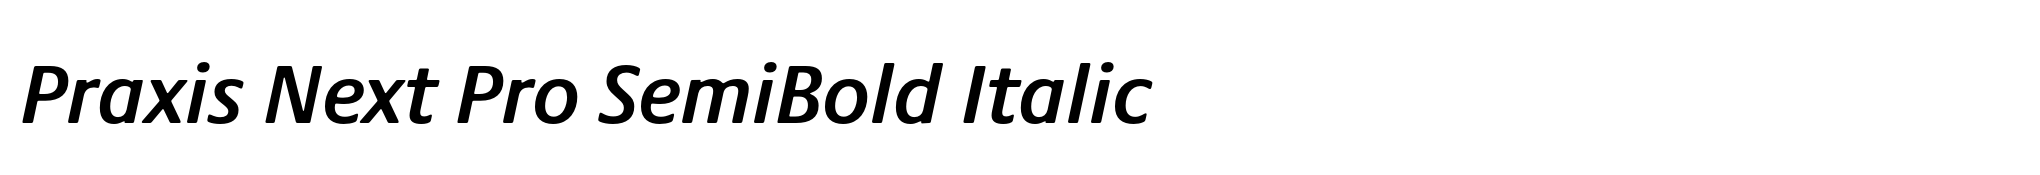 Praxis Next Pro SemiBold Italic image